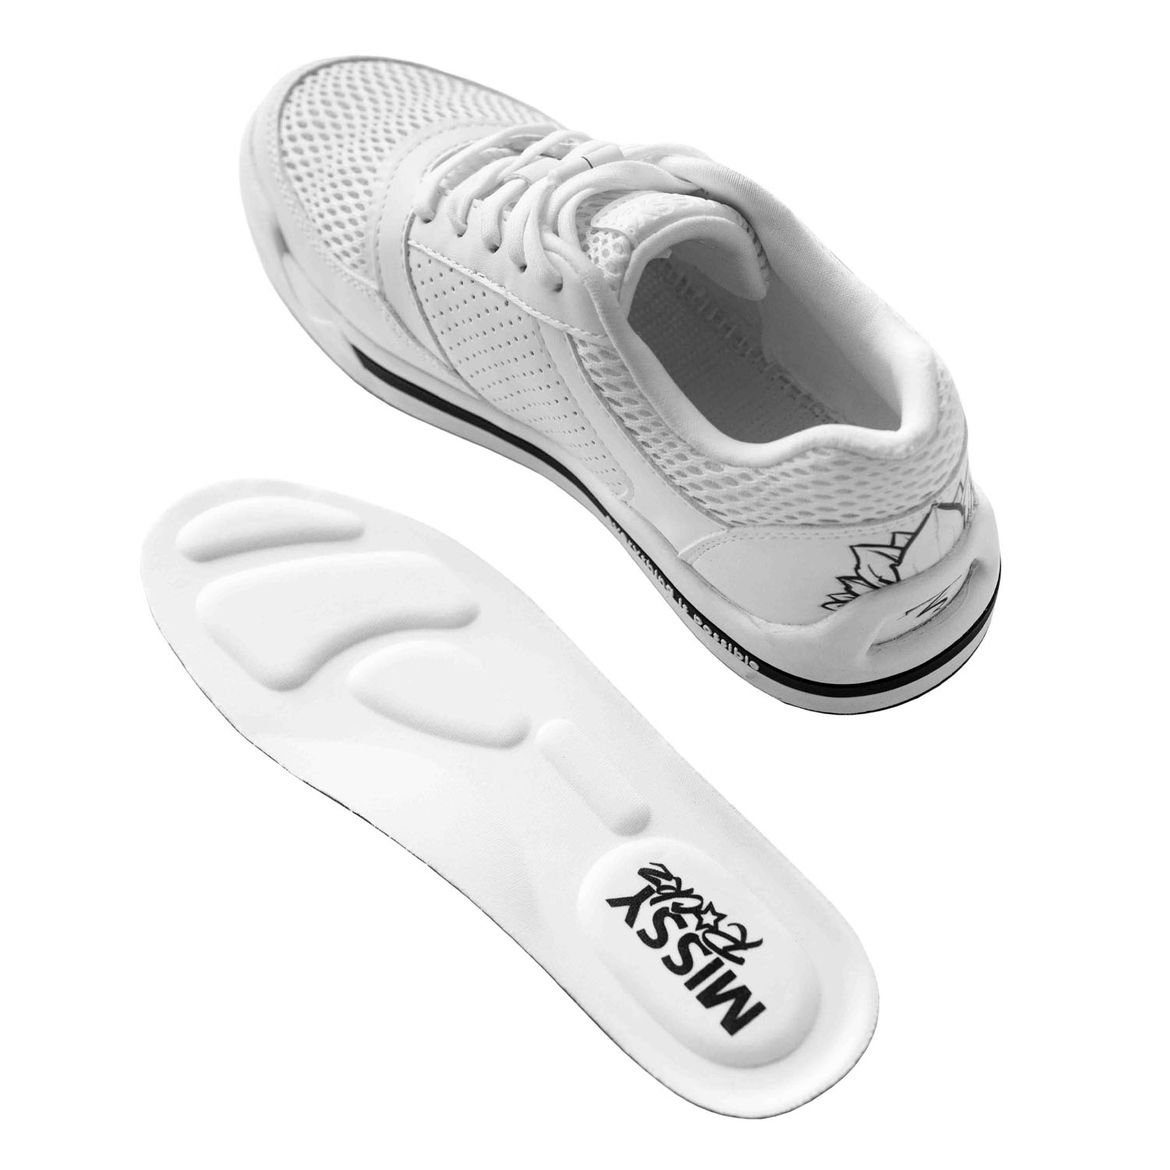 EIP white Sneakerboots SKETCH 1 IT Missy / cream Rockz No.